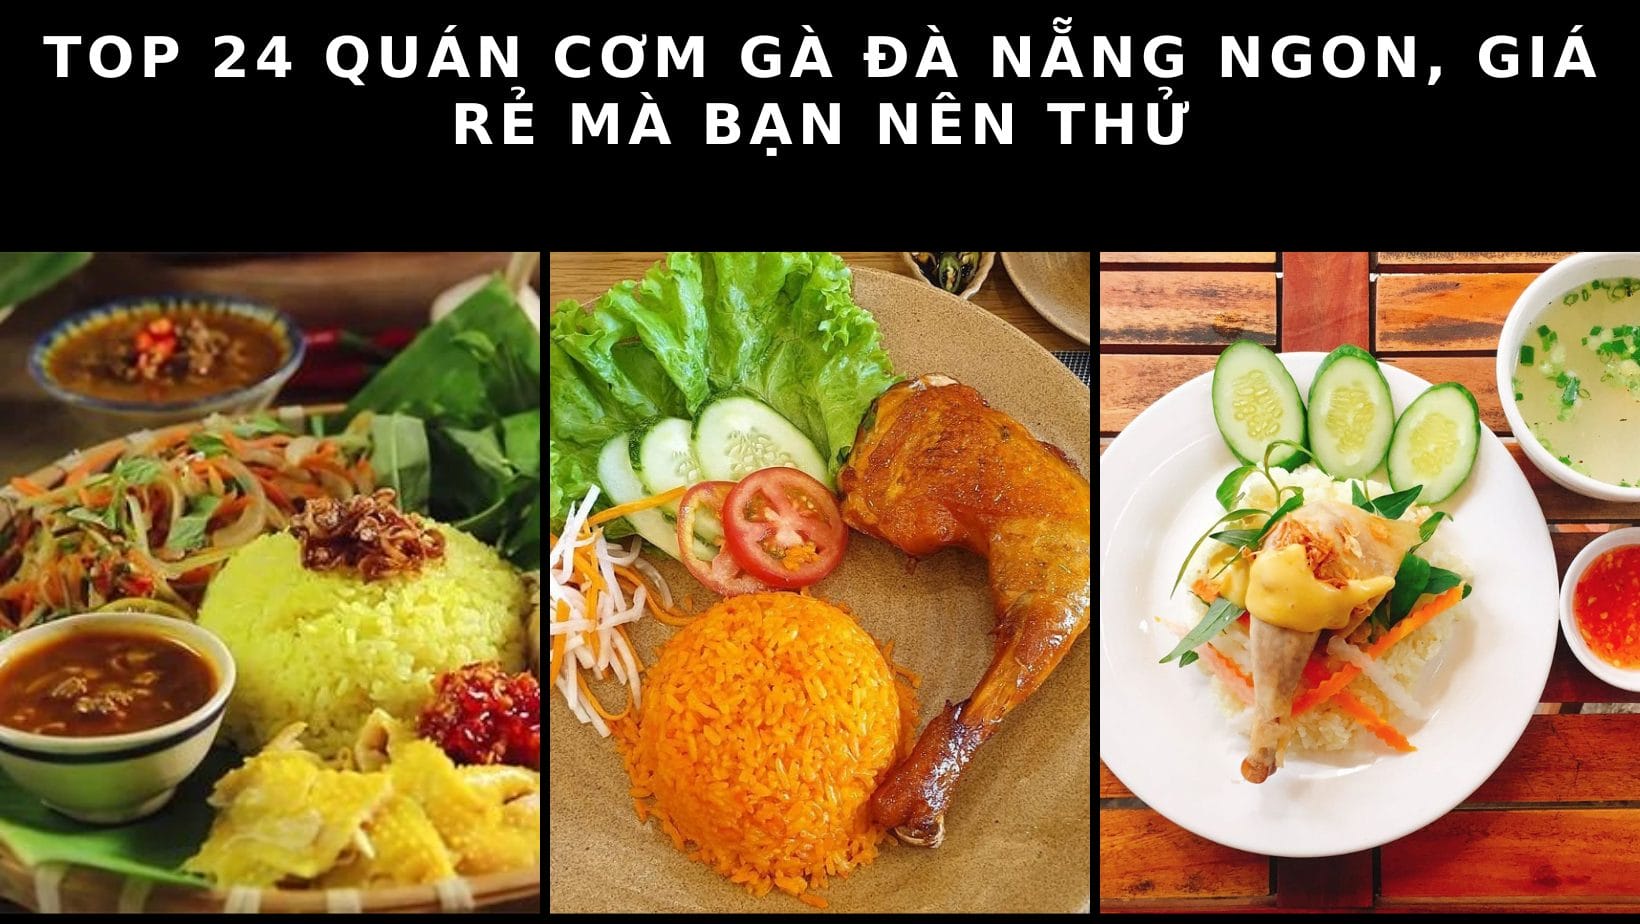 Top 24 Quán cơm gà Đà Nẵng ngon, giá rẻ mà bạn nên thử